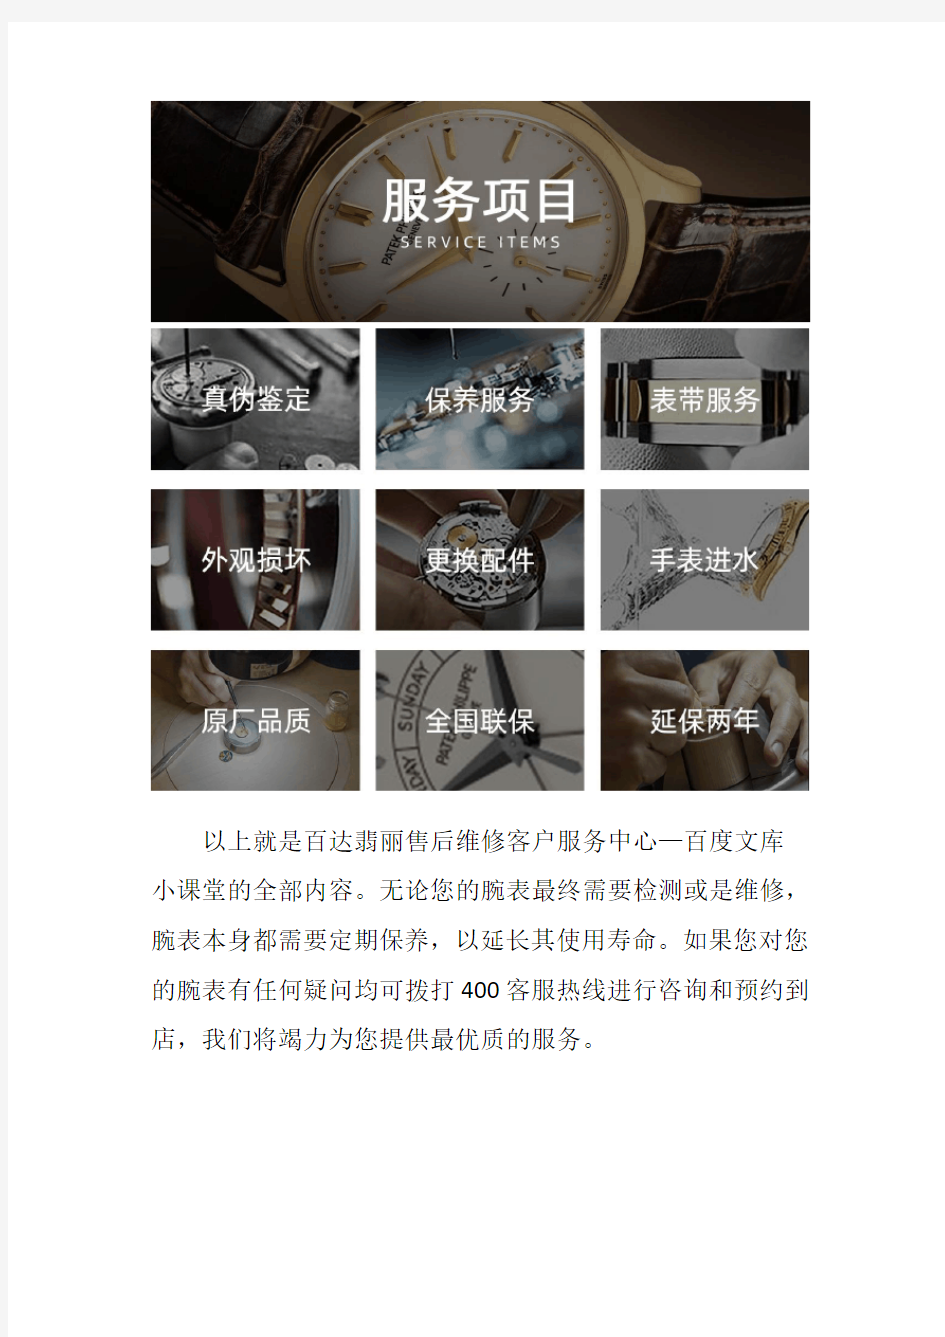 北京百达翡丽表售后维修网点--手表表蒙碎裂了要怎么处理